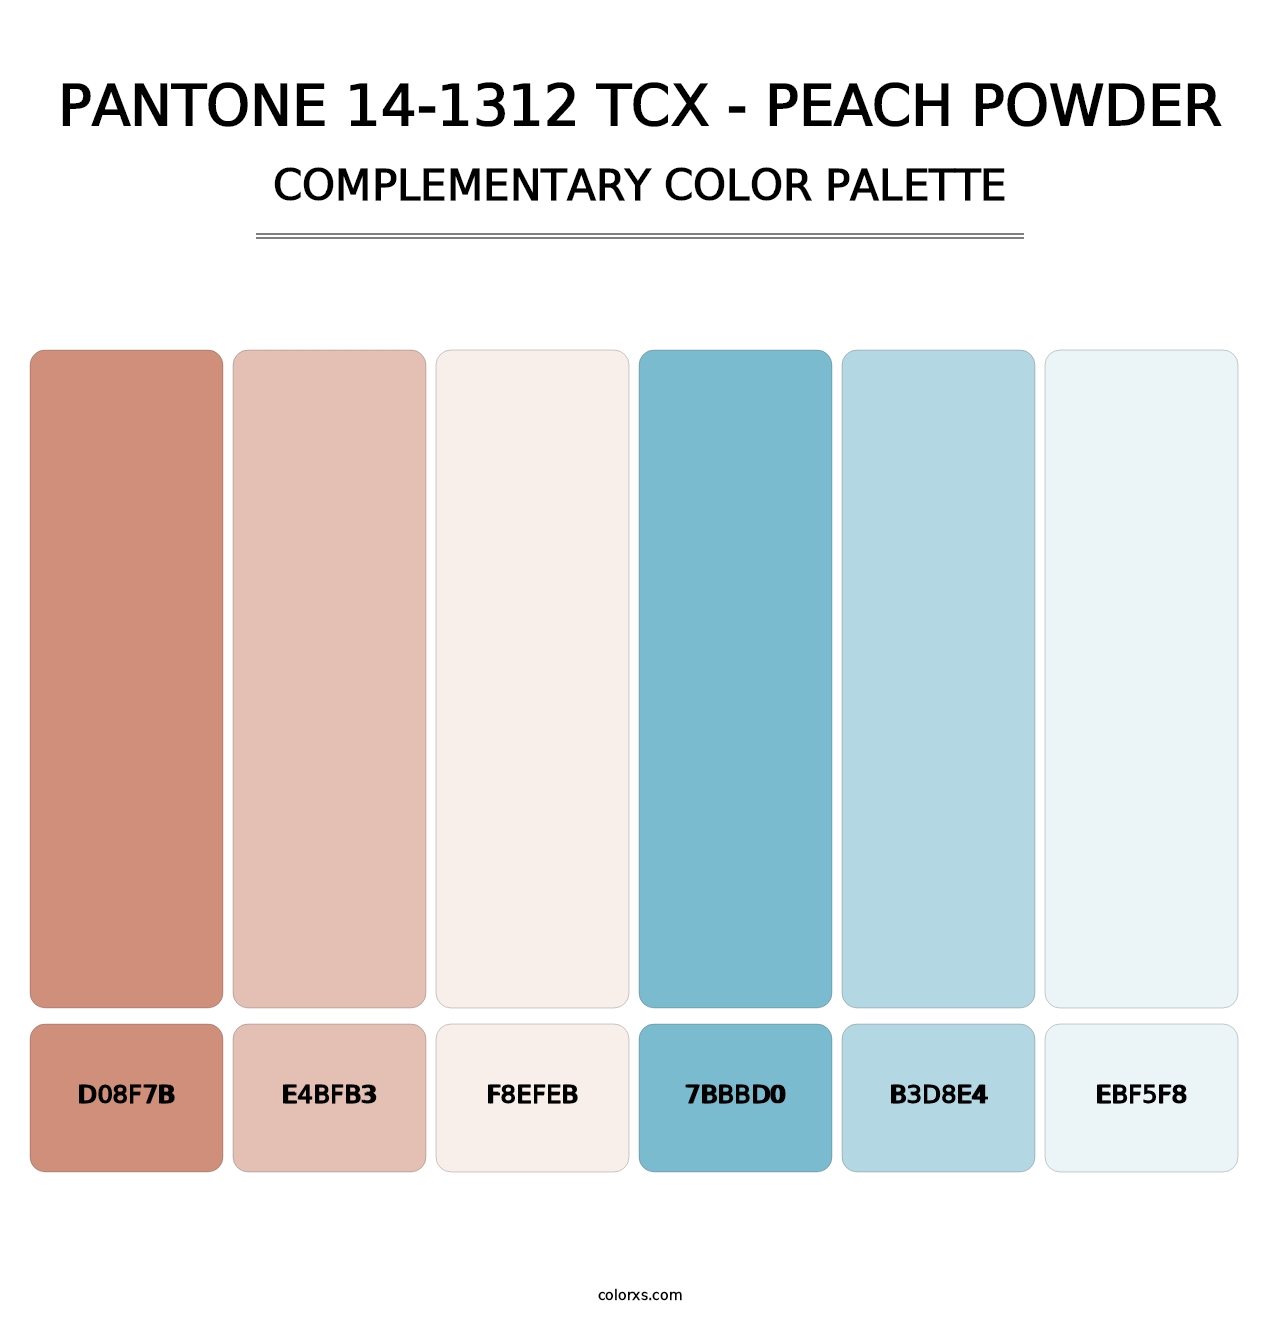 PANTONE 14-1312 TCX - Peach Powder - Complementary Color Palette